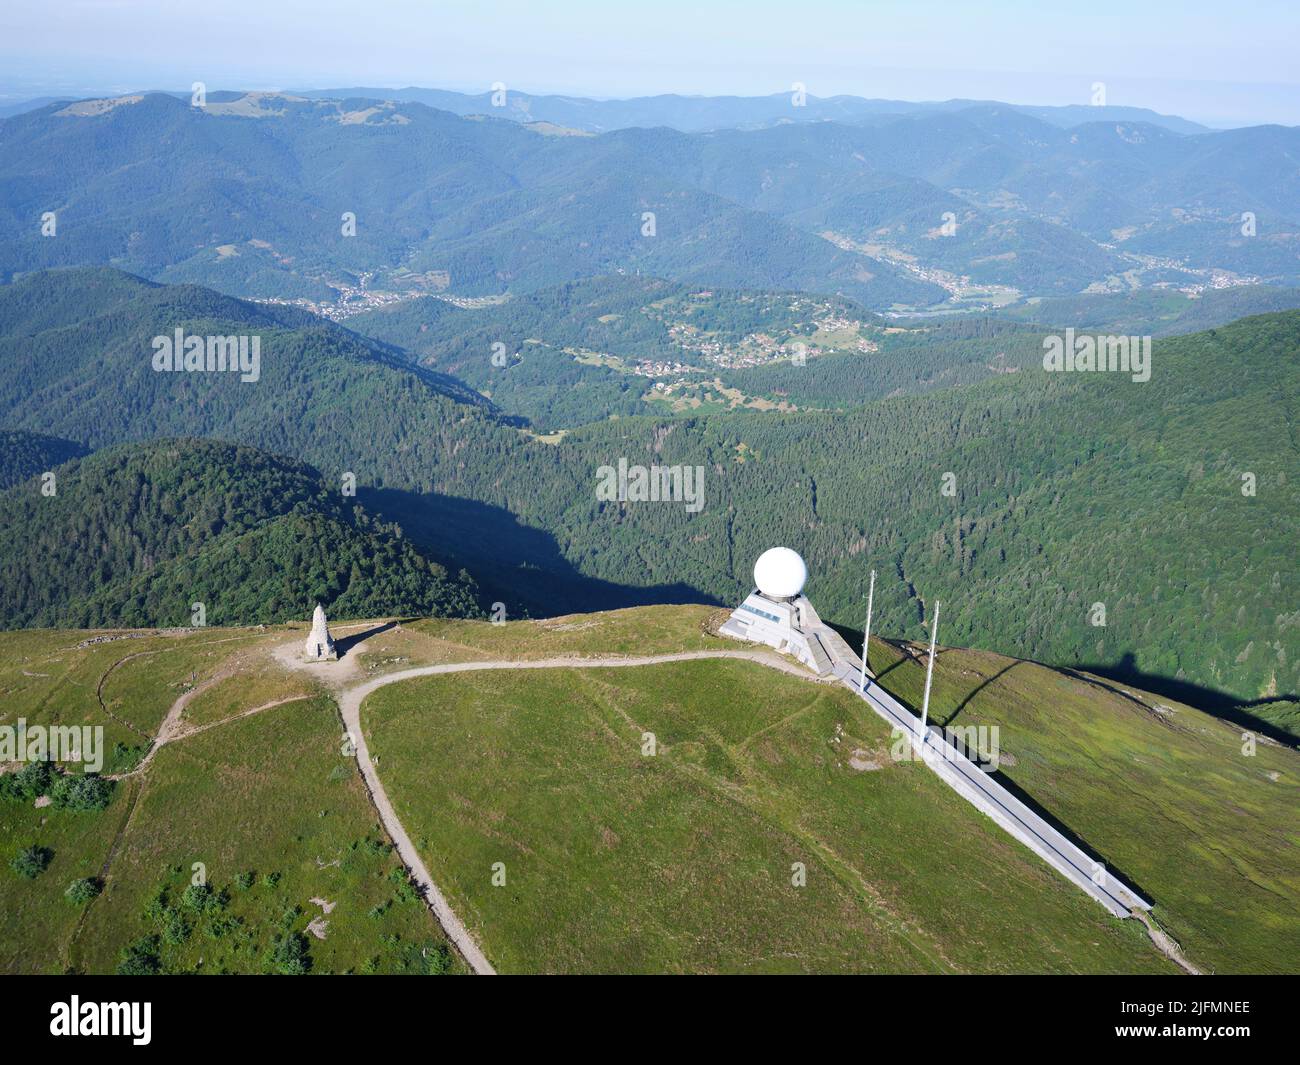 VUE AÉRIENNE. Radar d'aviation au Grand ballon, qui est le plus haut sommet (1423 mètres) du massif des Vosges. Haut-Rhin, Alsace, Grand est, France. Banque D'Images